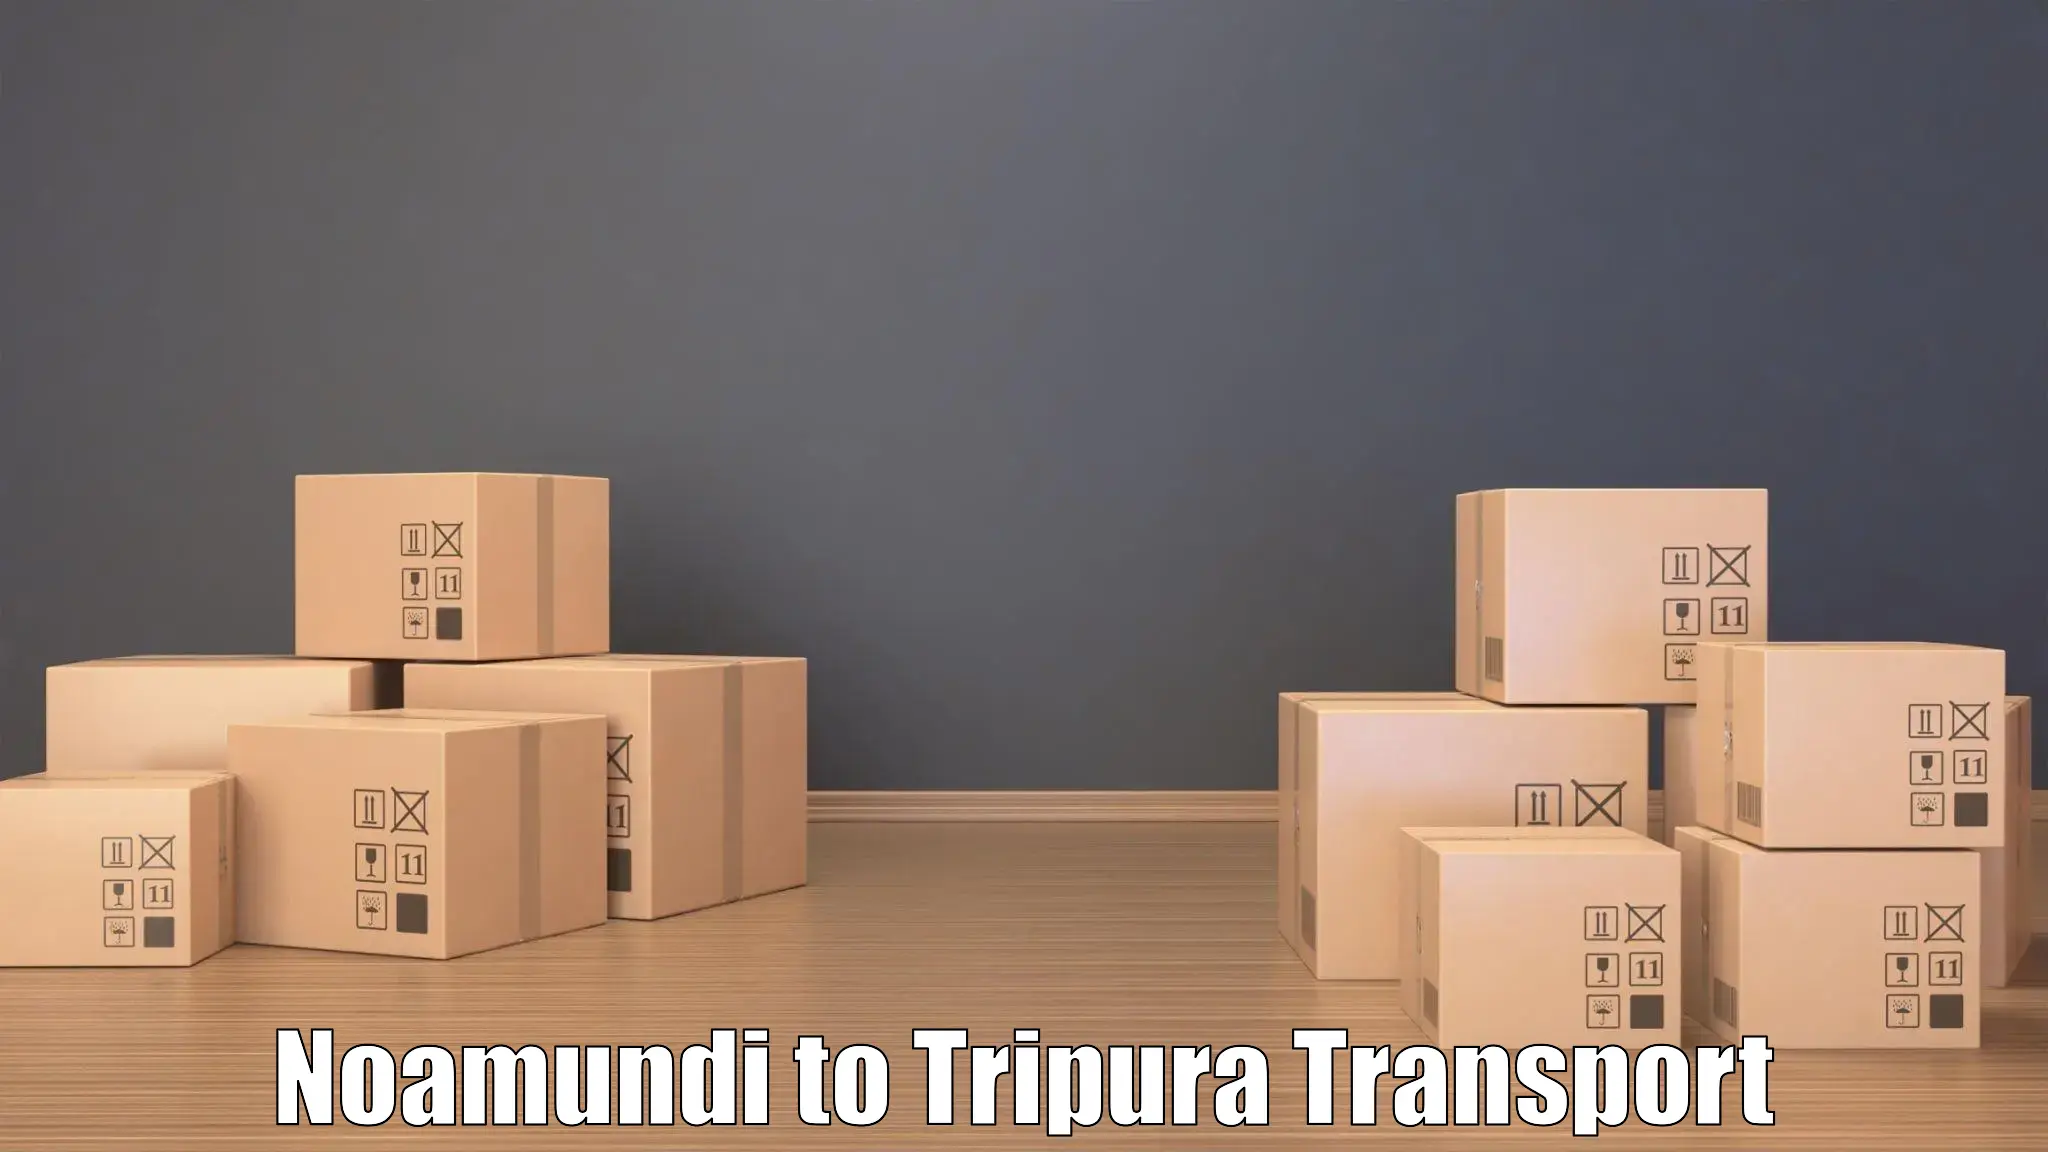 Online transport booking Noamundi to Udaipur Tripura